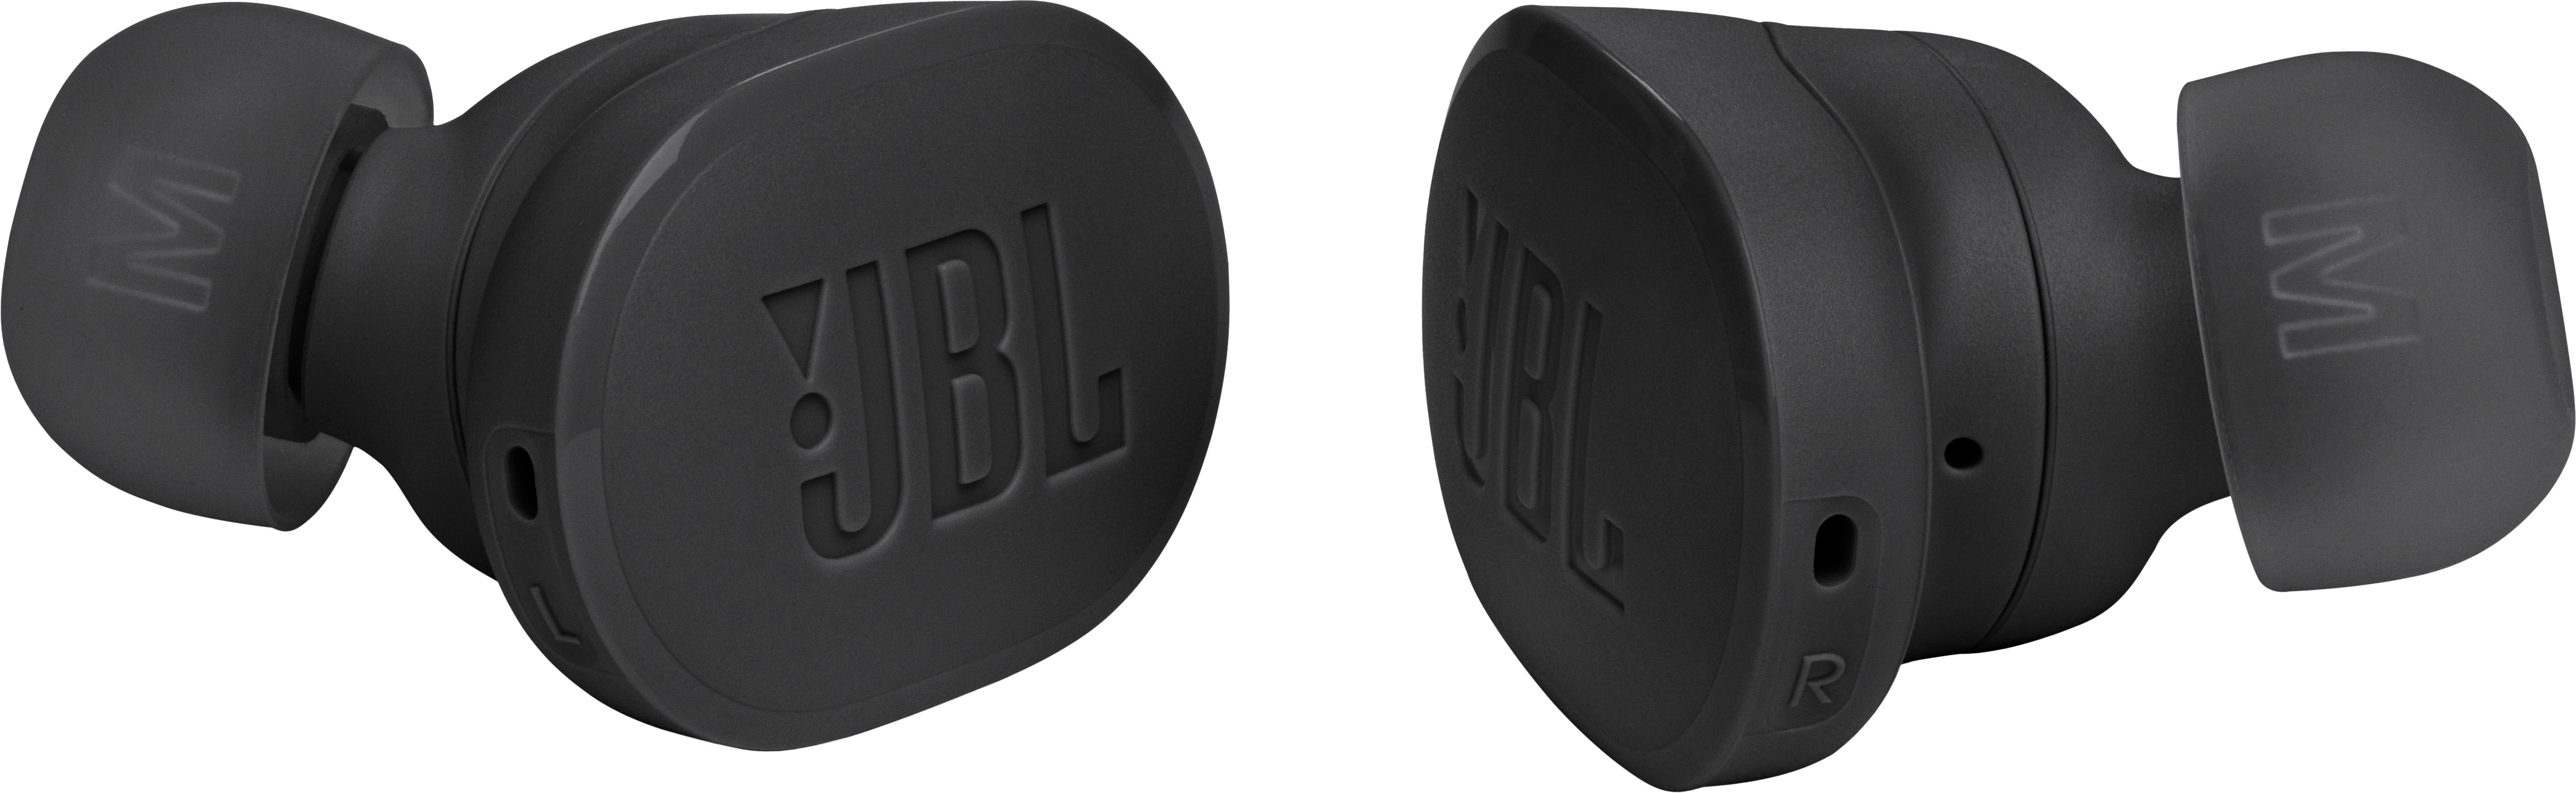 JBL Tune Flex True Wireless Noise Cancelling Earbuds Blue JBLTFLEXBLUAM -  Best Buy